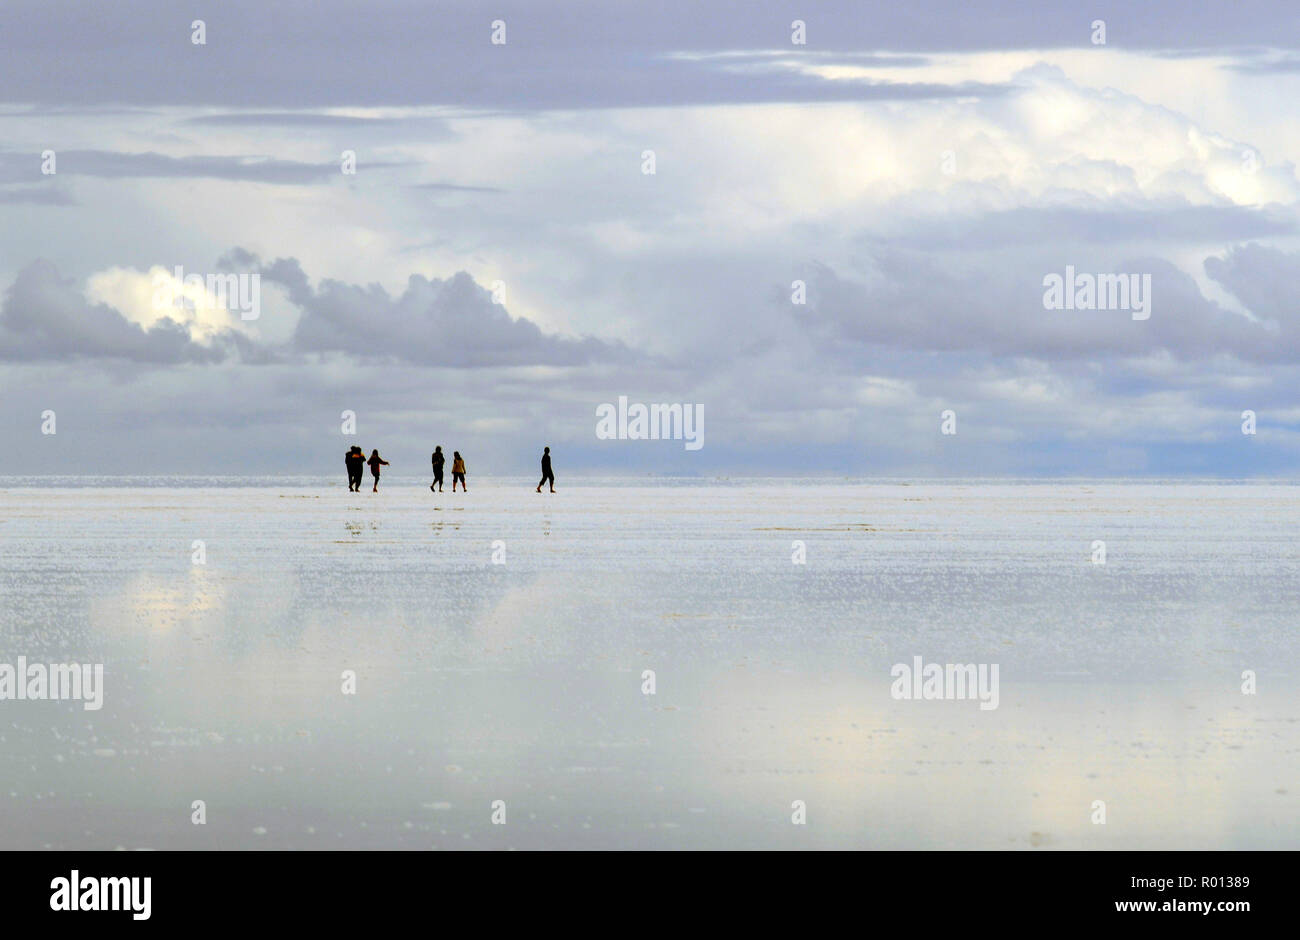 25. Februar 2010 - Salar de Uyuni, Bolivien: Touristen wandern auf dem flachen Horizont des Salar de Uyuni Salz Felder. Einige Teile des Salar werden mit 5 bis 30 Zentimeter Wasser während der Regenzeit überflutet, drehen die gesamte Salz Felder in einen riesigen Spiegel. Voyageurs dans le Salar de Uyuni, un-Wüste de Sel d'un Blanc eclatant de Bolivie. Quand le Salar est recouvert d'eau, Il se transforme en un immense Miroir refletant Le ciel de maniere quasiment parfaite. *** Frankreich/KEINE VERKÄUFE IN DEN FRANZÖSISCHEN MEDIEN *** Stockfoto